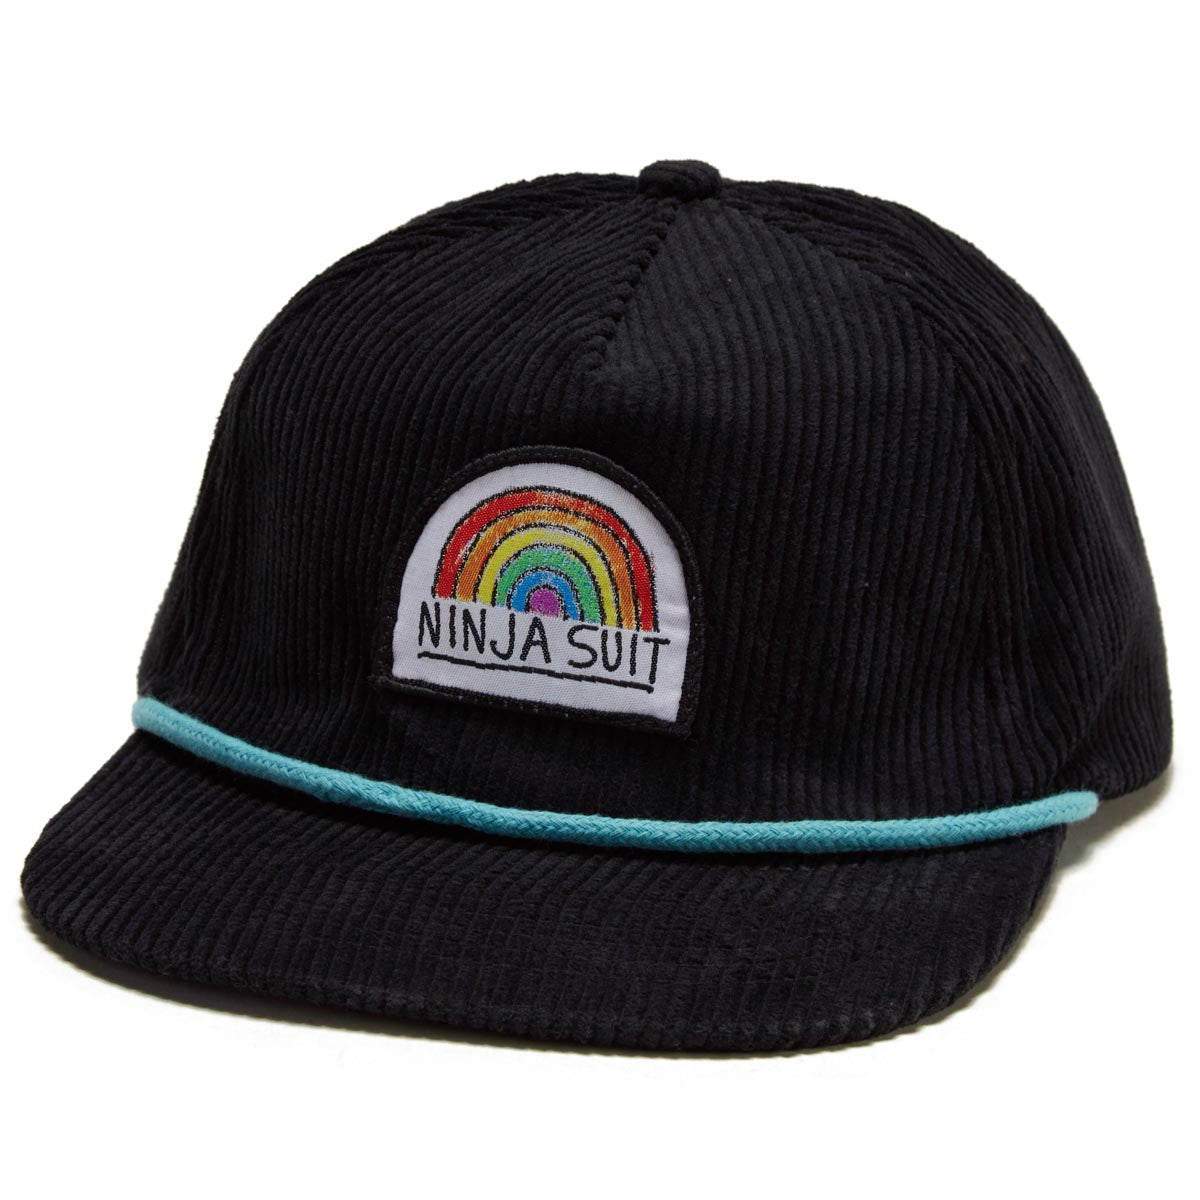 Airblaster Ninja Rainbow Corduroy Hat - Black/Black image 1